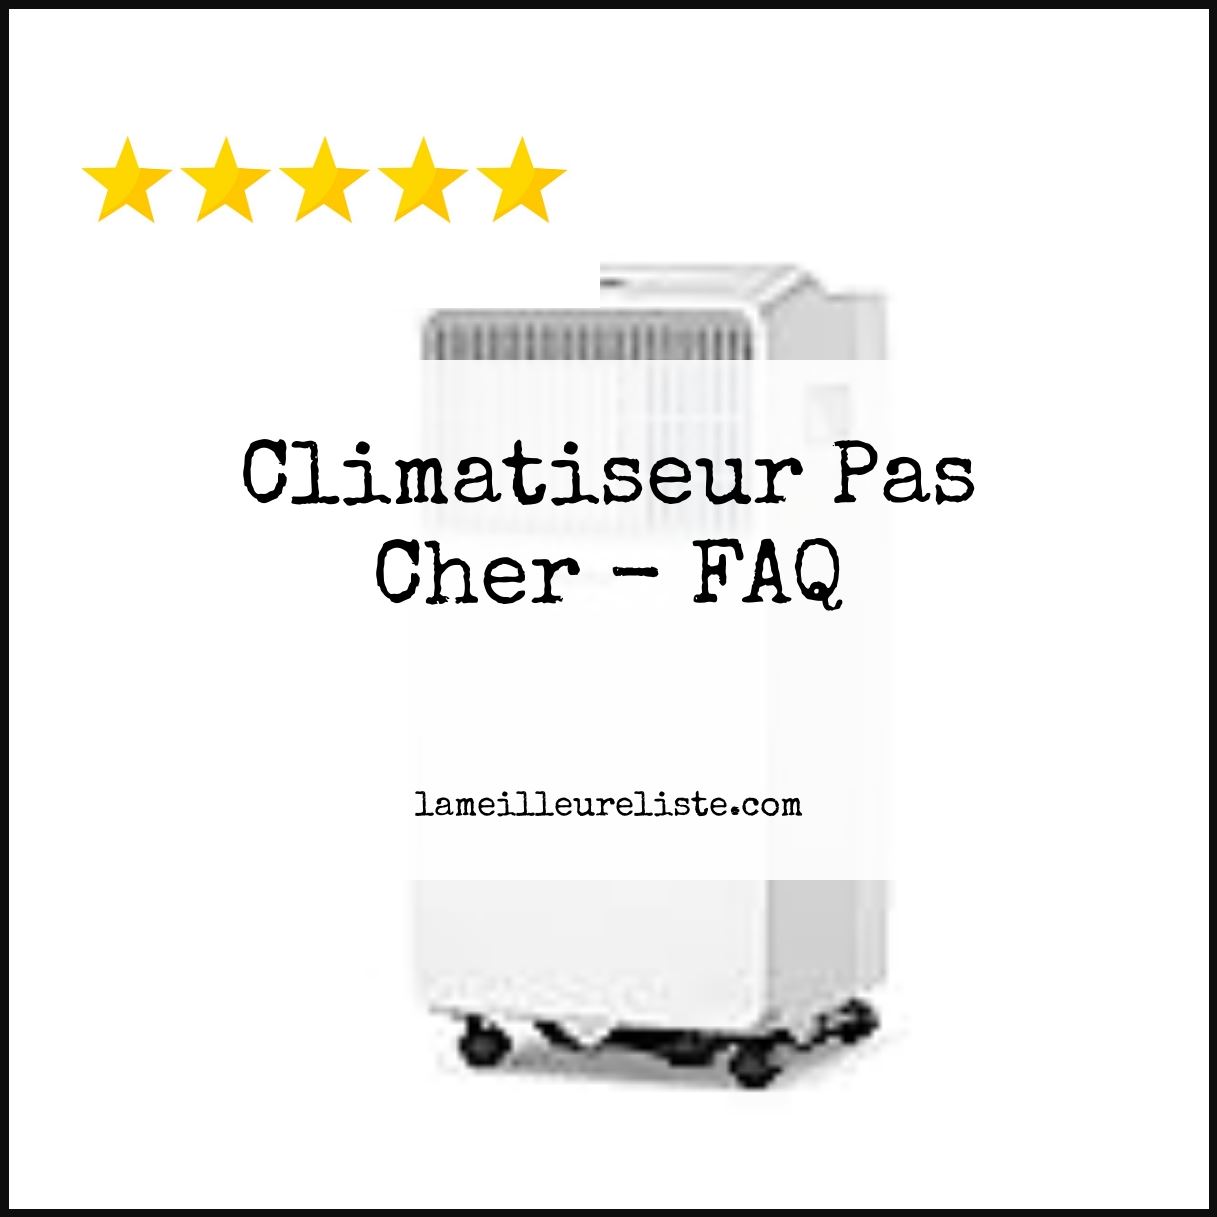 Climatiseur Pas Cher - FAQ